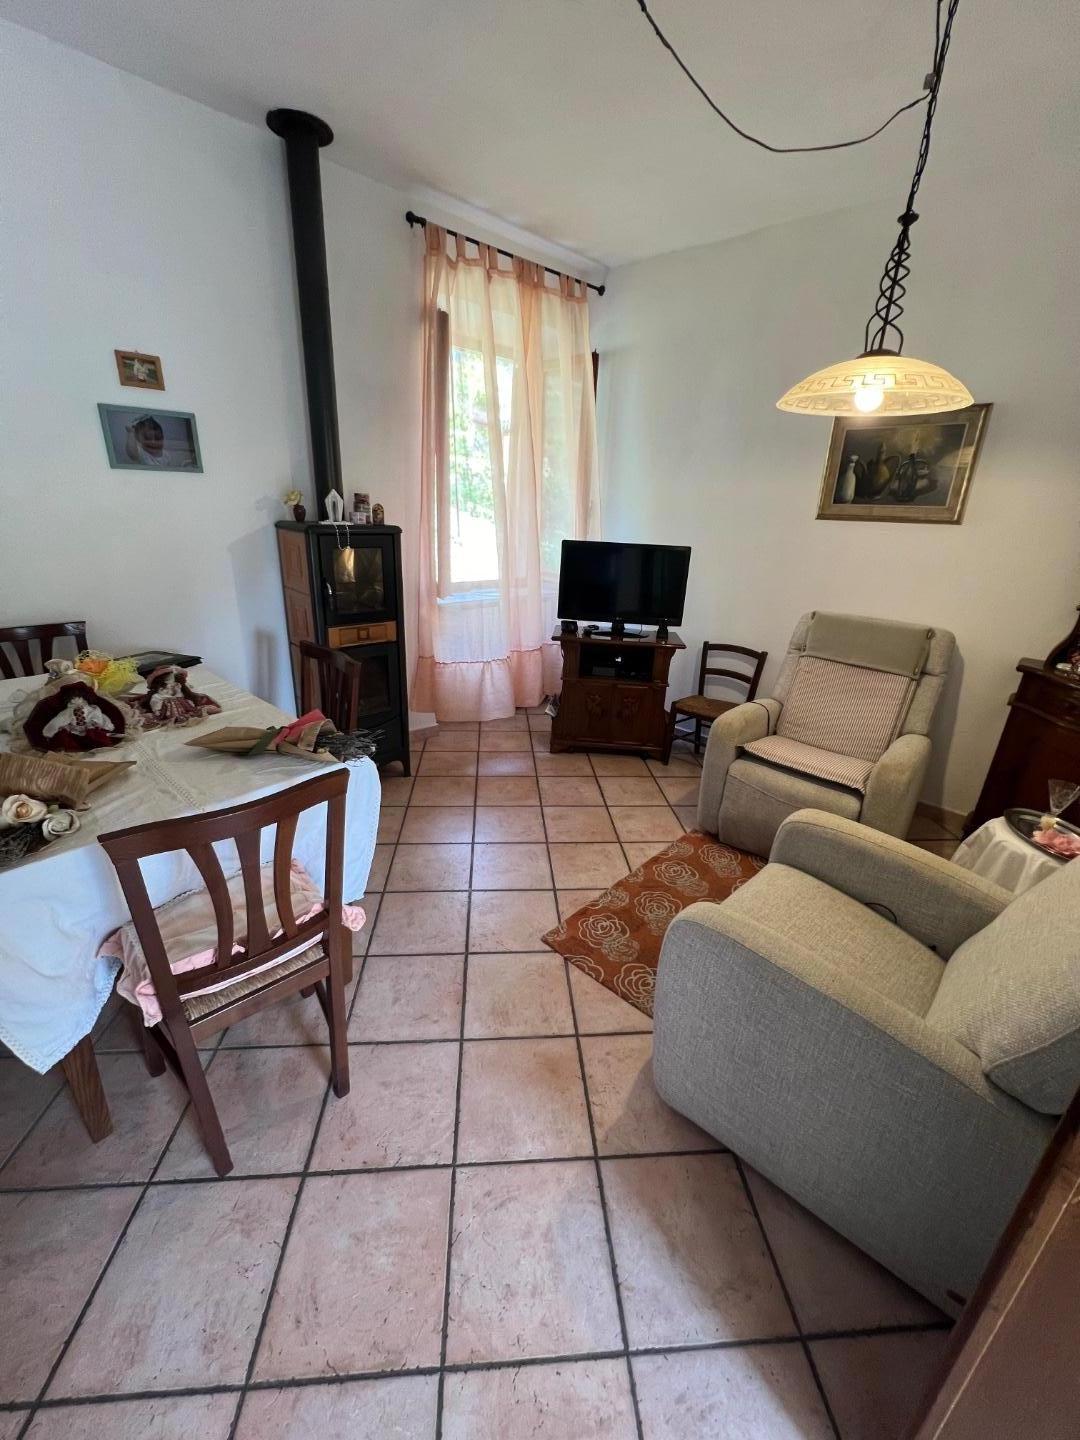 Appartamento in affitto a Ortonovo, 4 locali, prezzo € 500 | CambioCasa.it